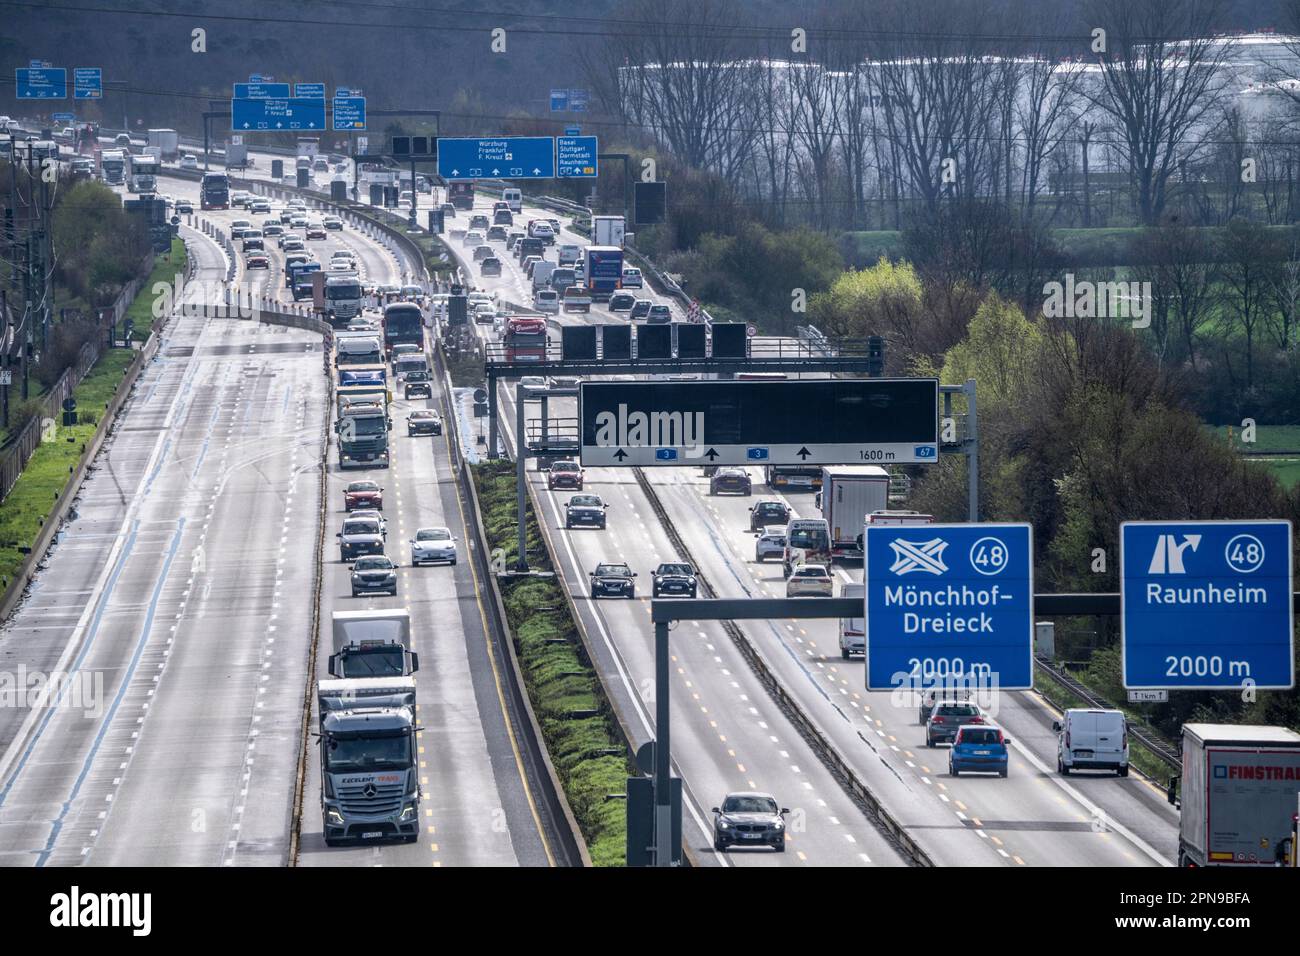 A3 motorway near Flörsheim, before the Mönchhof motorway junction, lane narrowing due to roadworks, Hesse, Germany Stock Photo